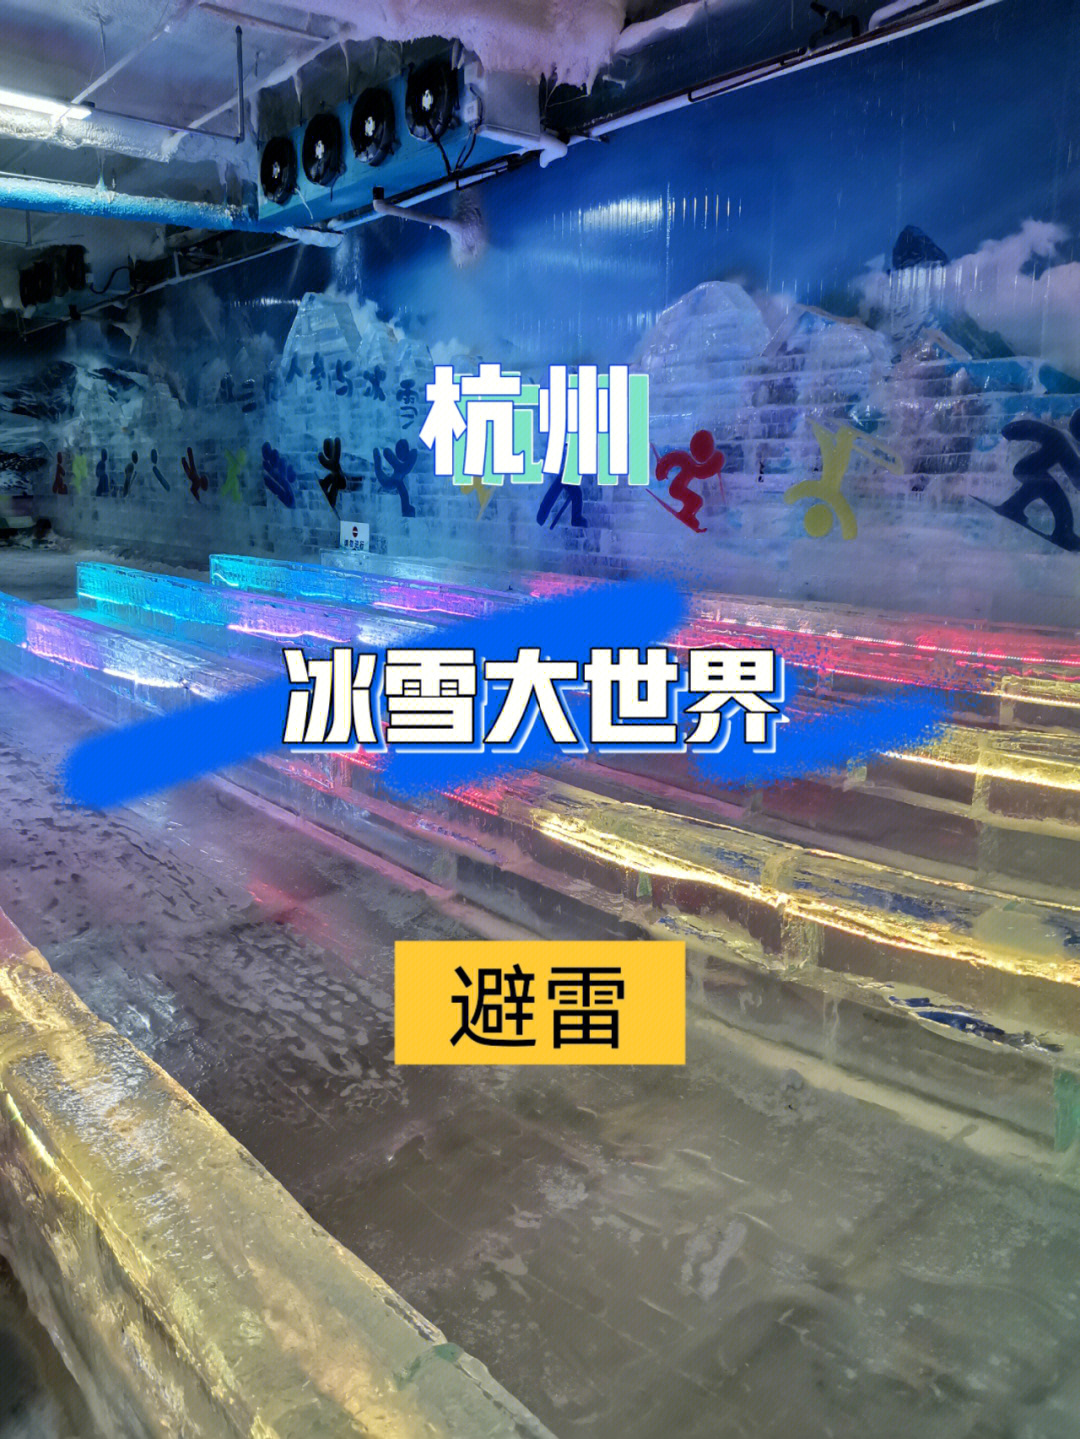 杭州冰雪大世界地址图片